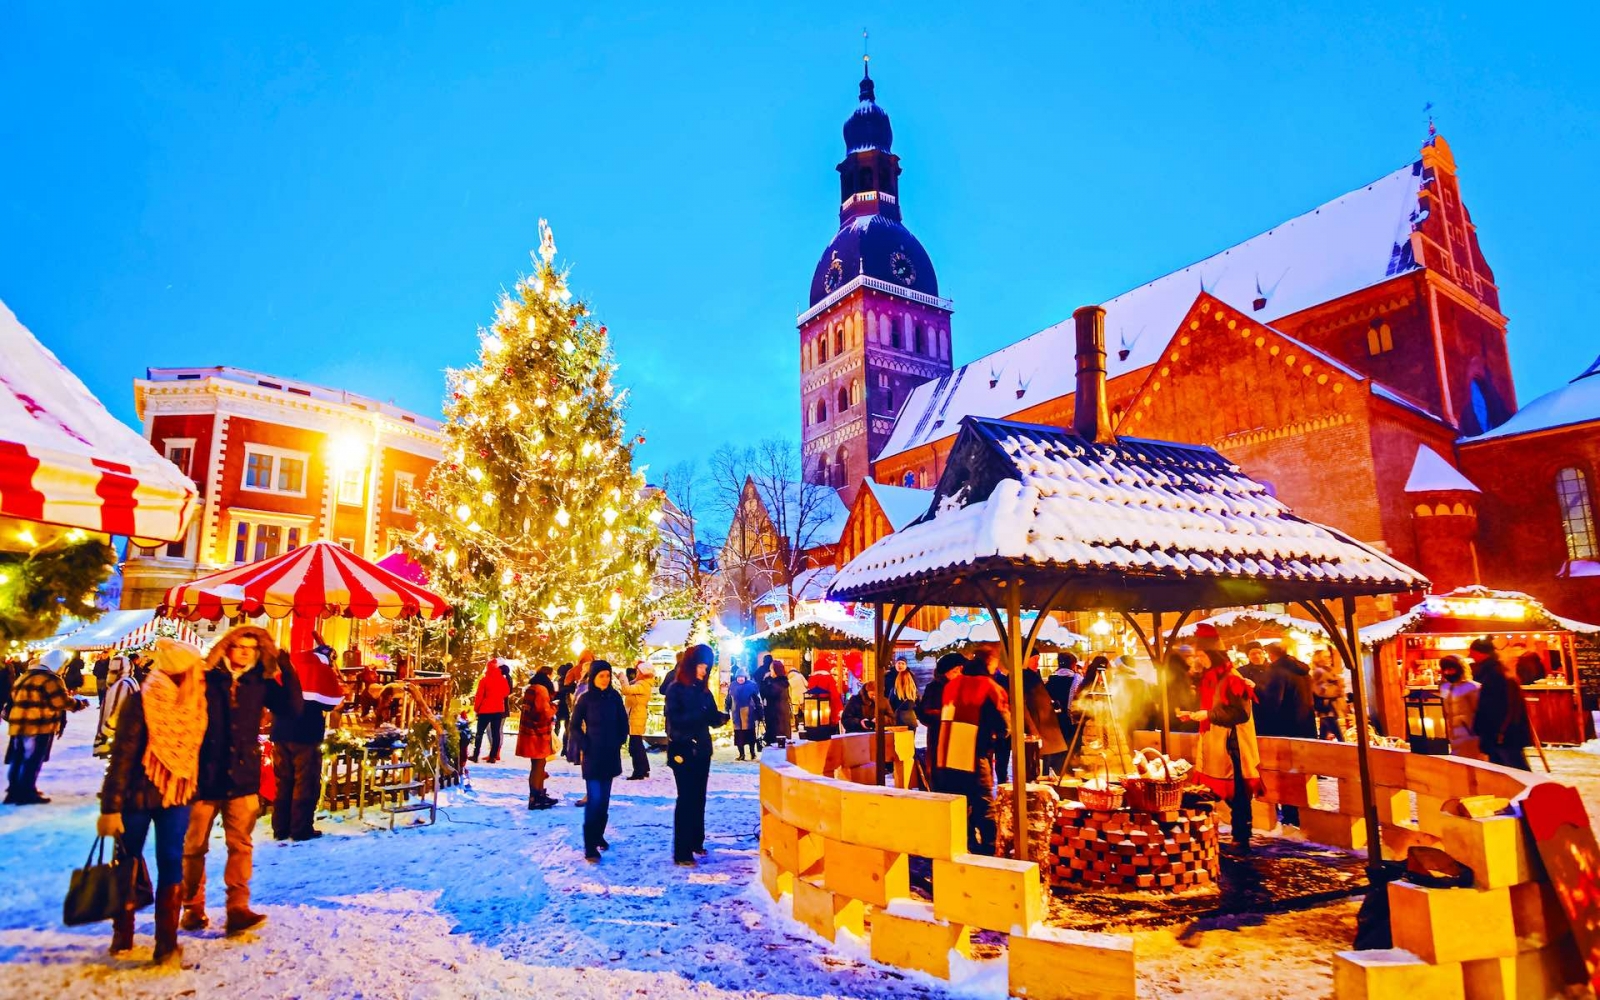 Paesaggio urbano di notte con il mercatino di Natale in piazza Duomo in inverno Riga, Lettonia.  Decorazione della Fiera dell'Avvento e bancarelle con artigianato